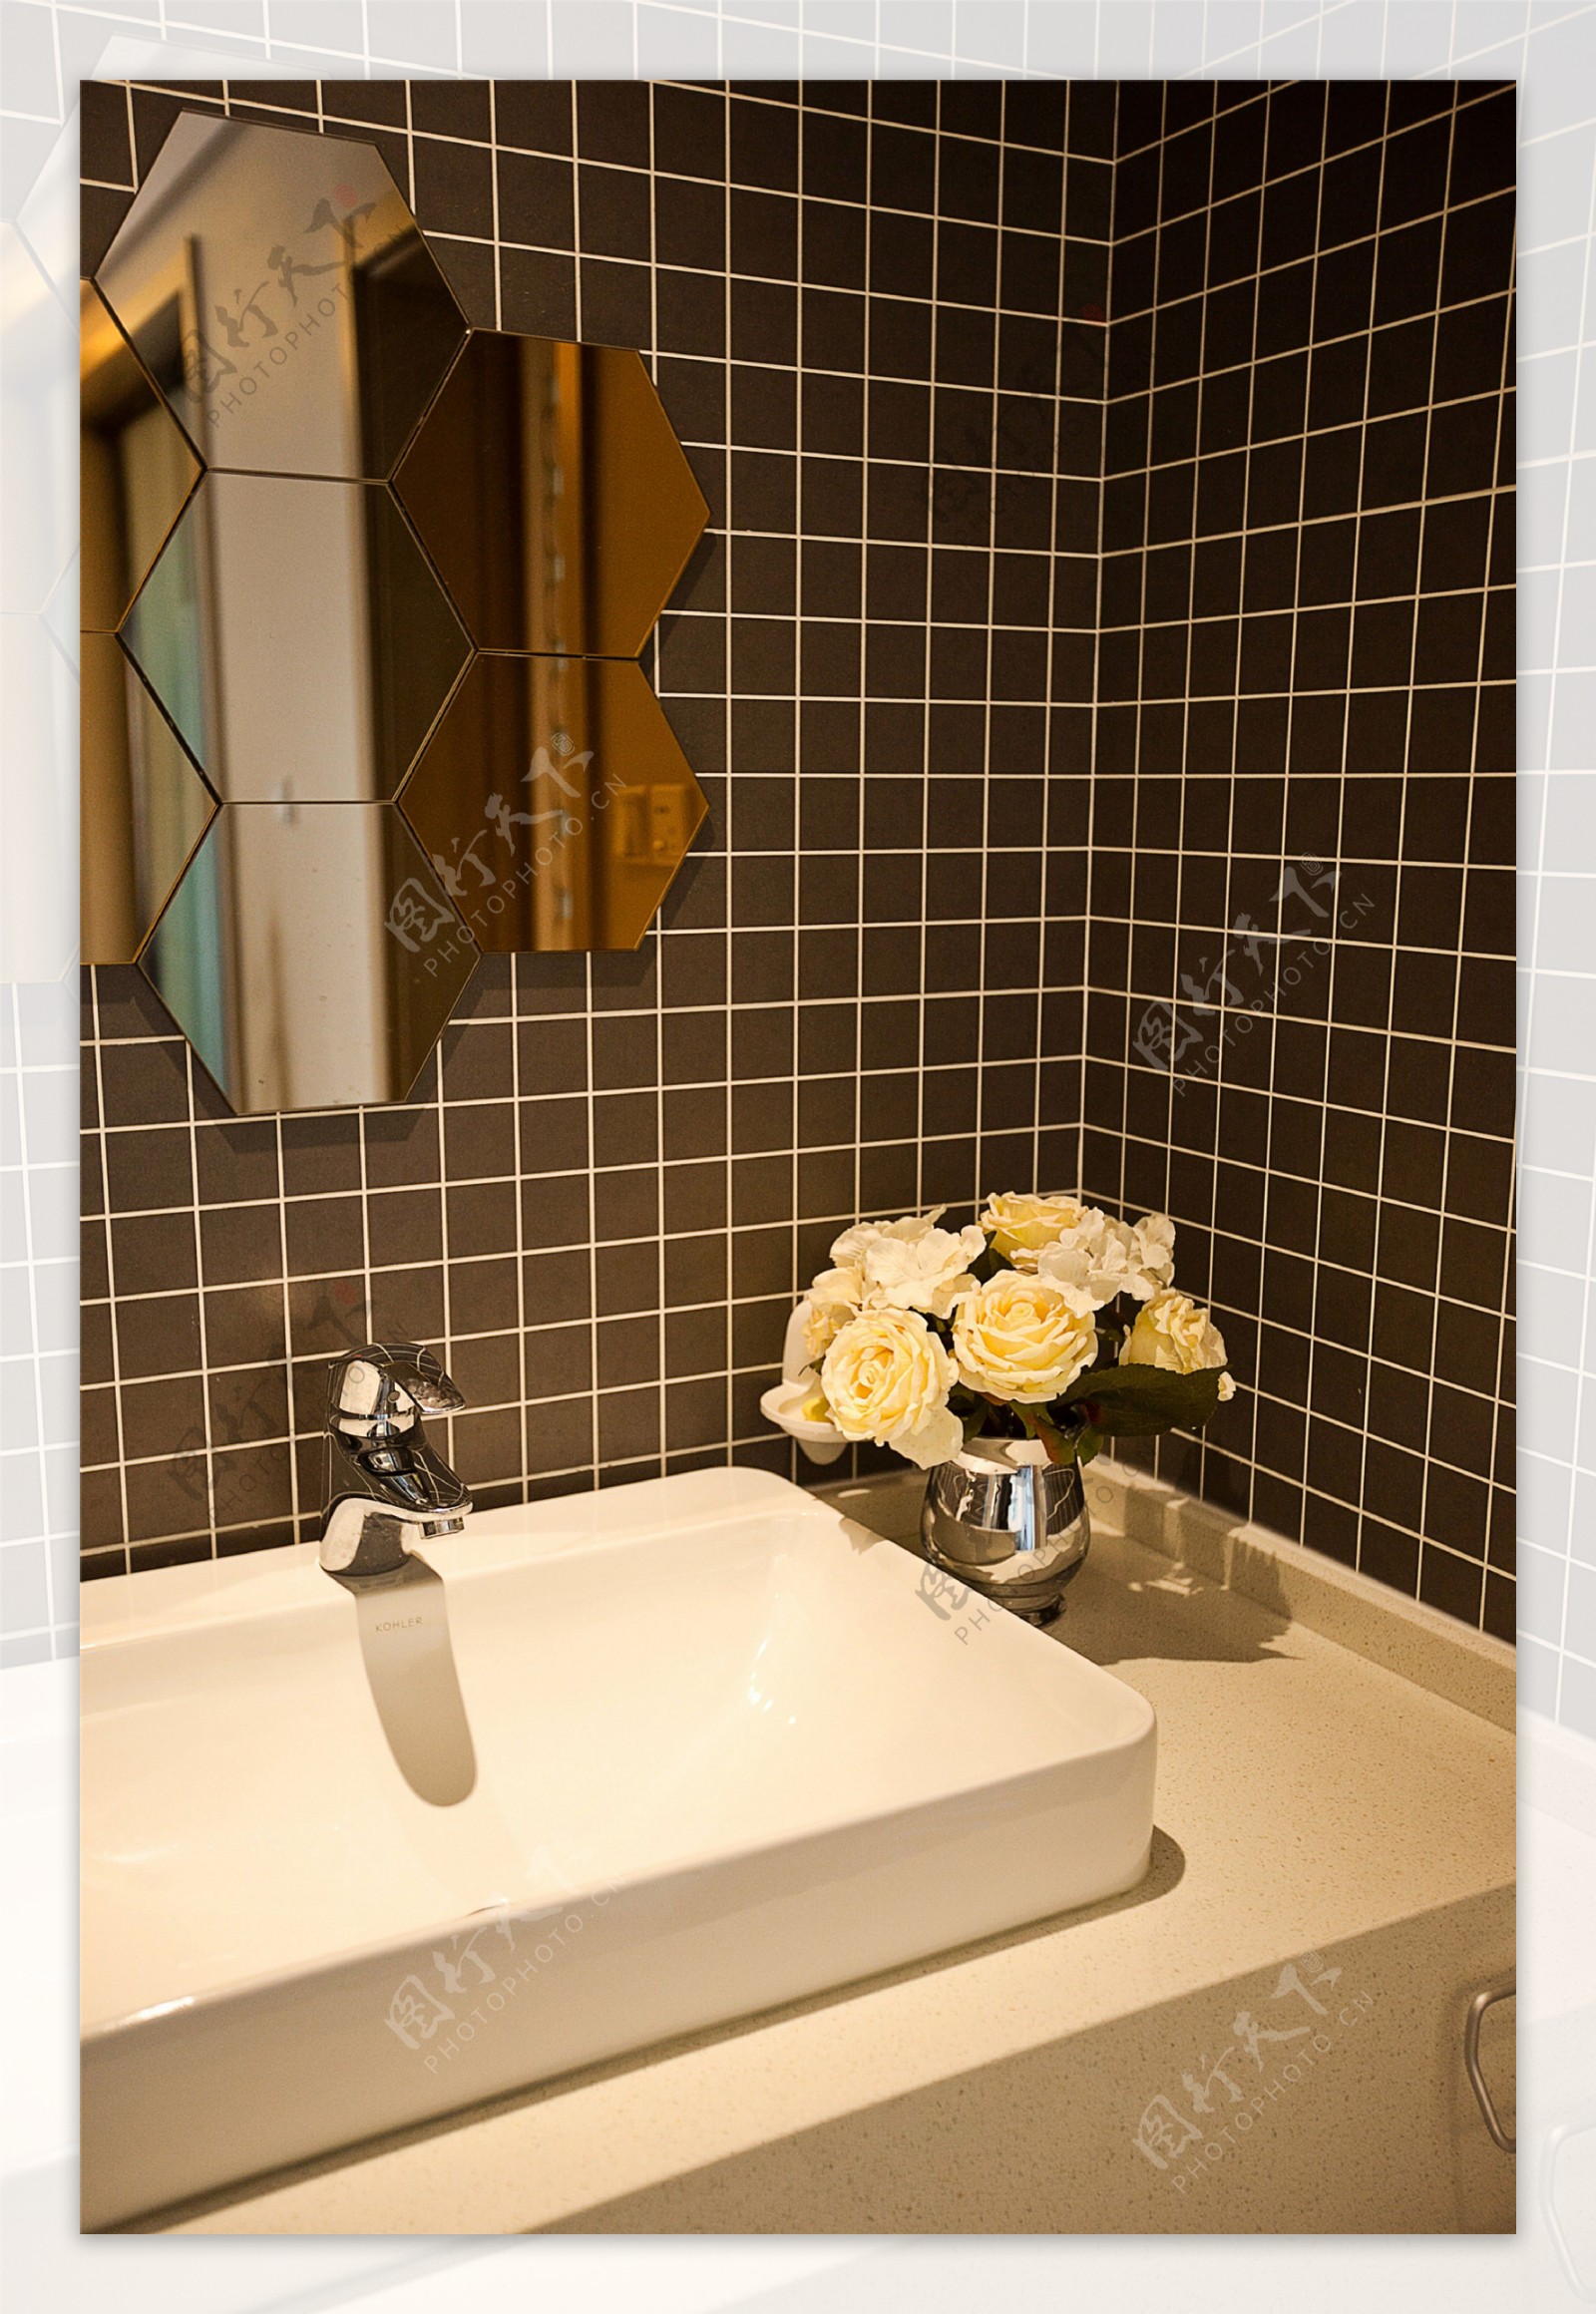 简约风室内设计浴室六边形镜子效果图